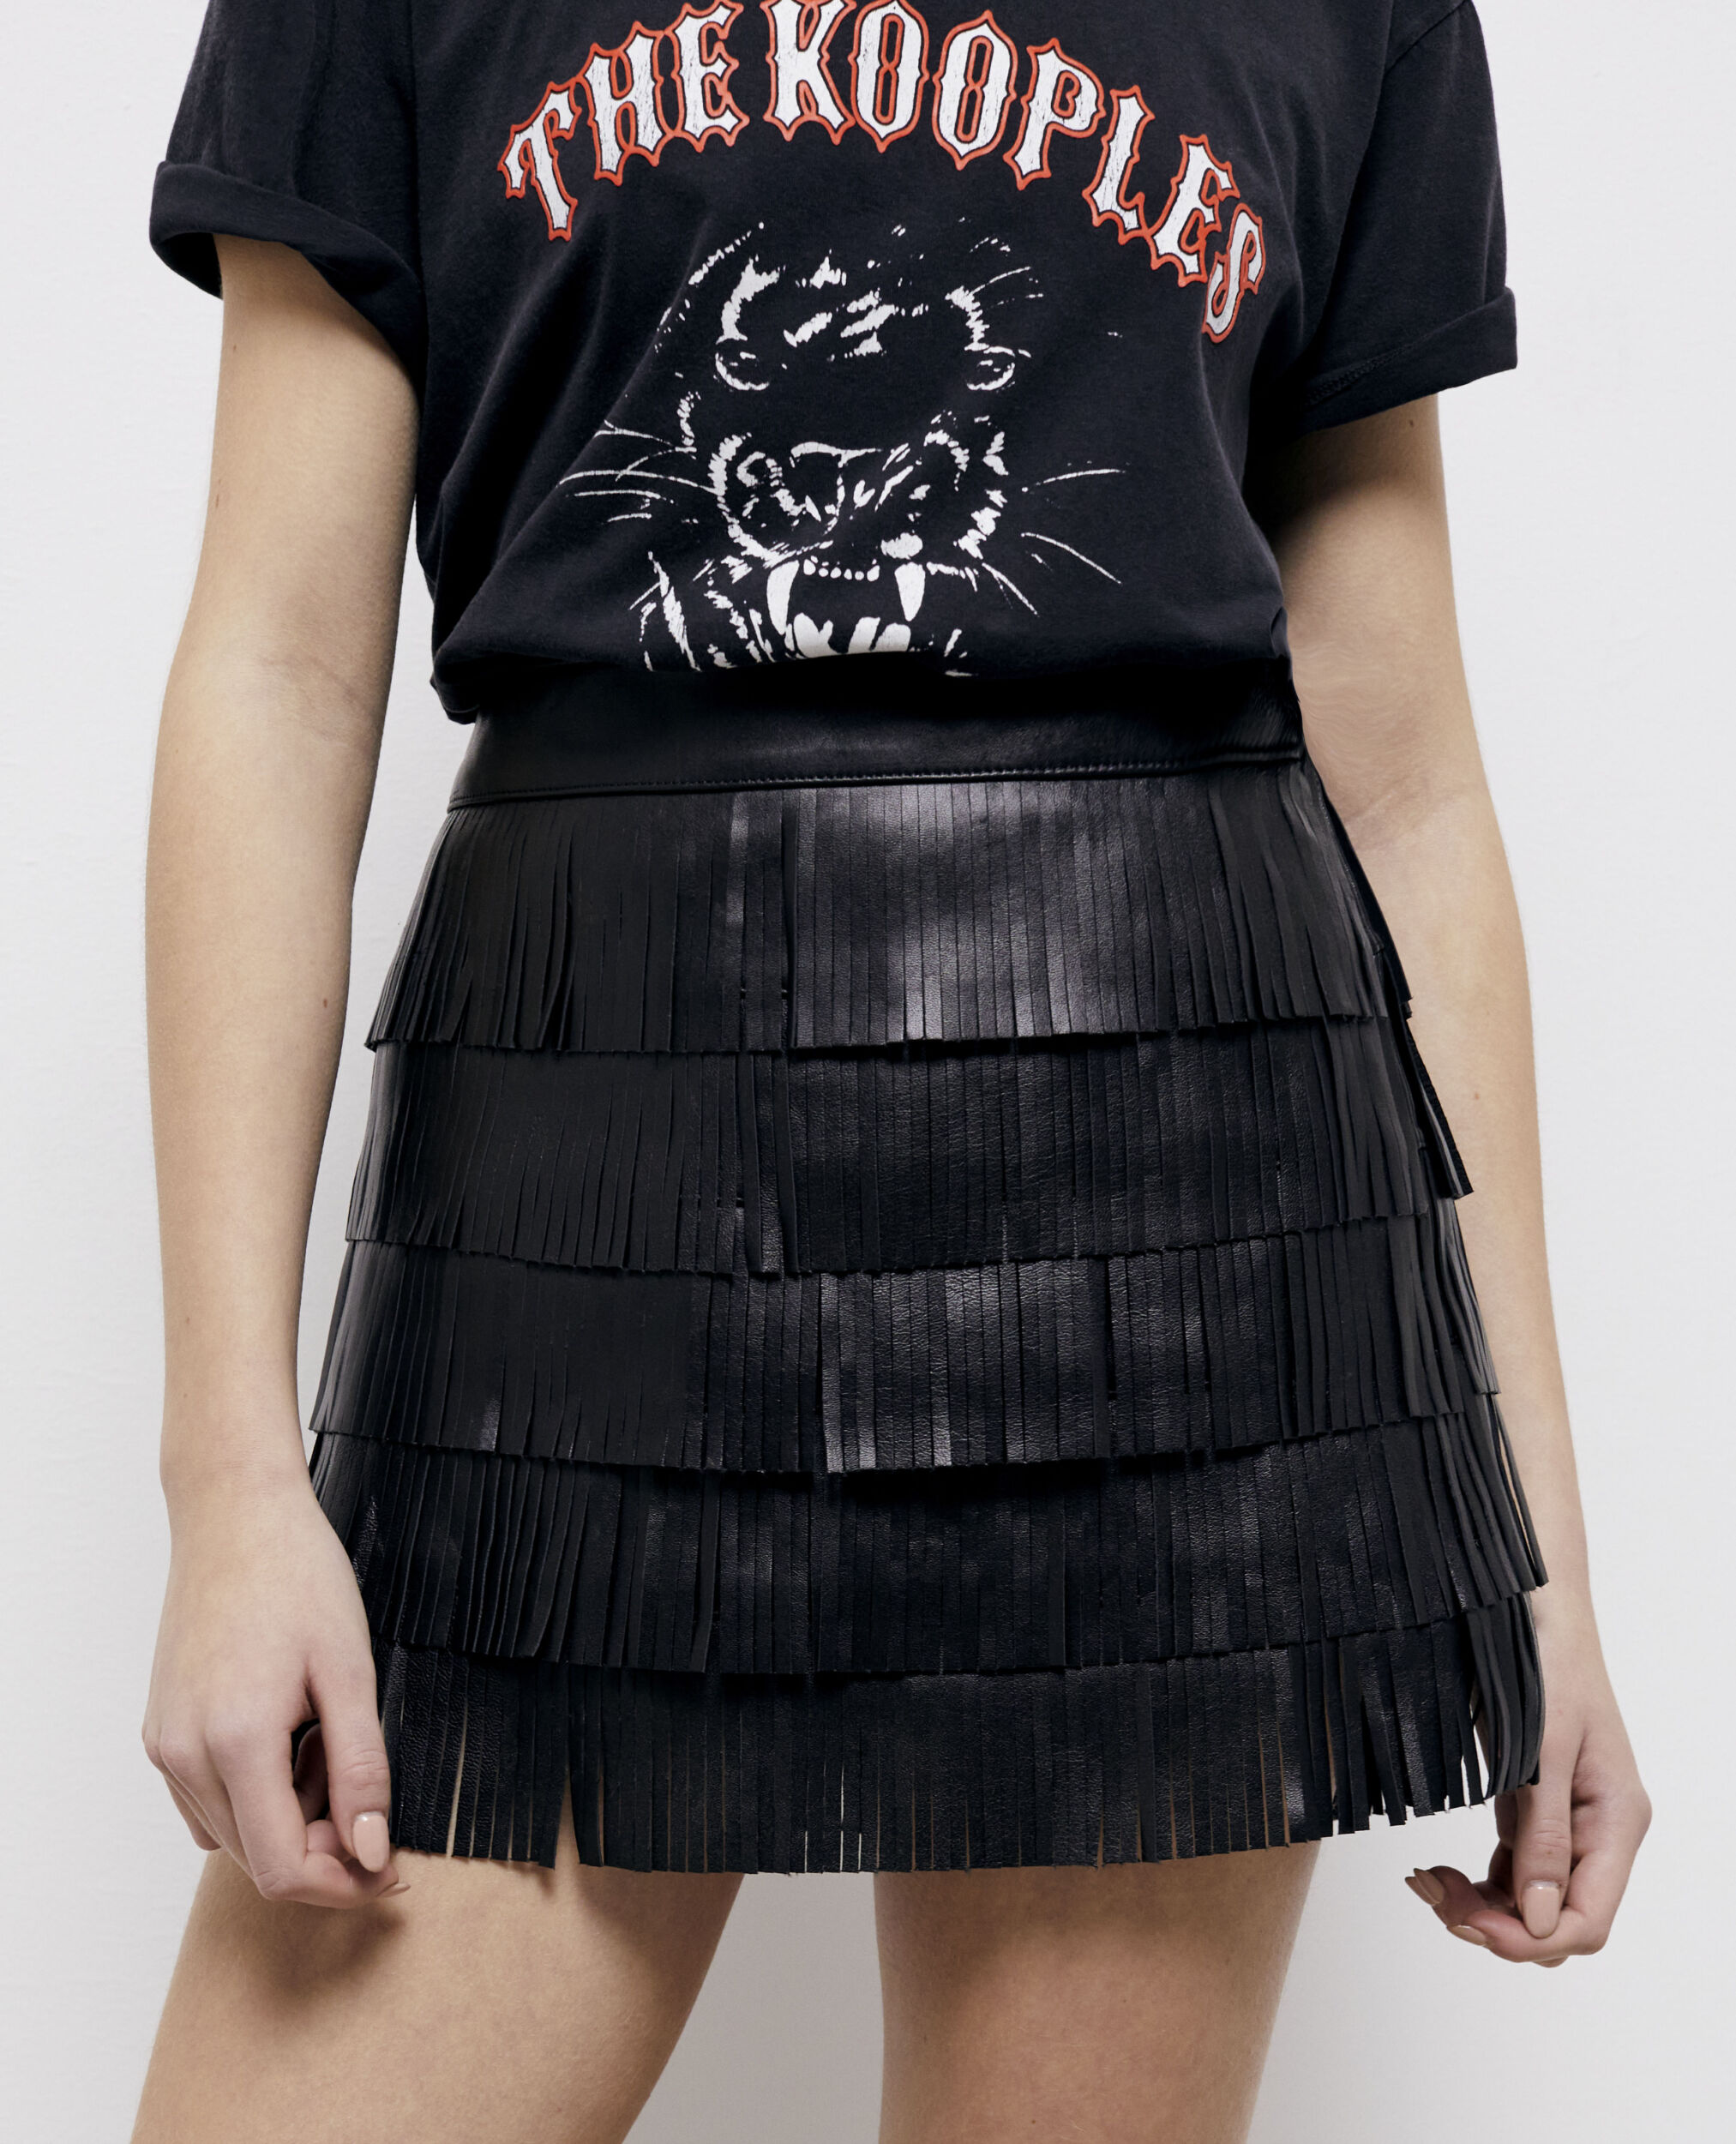 Short black leather skirt, BLACK, hi-res image number null